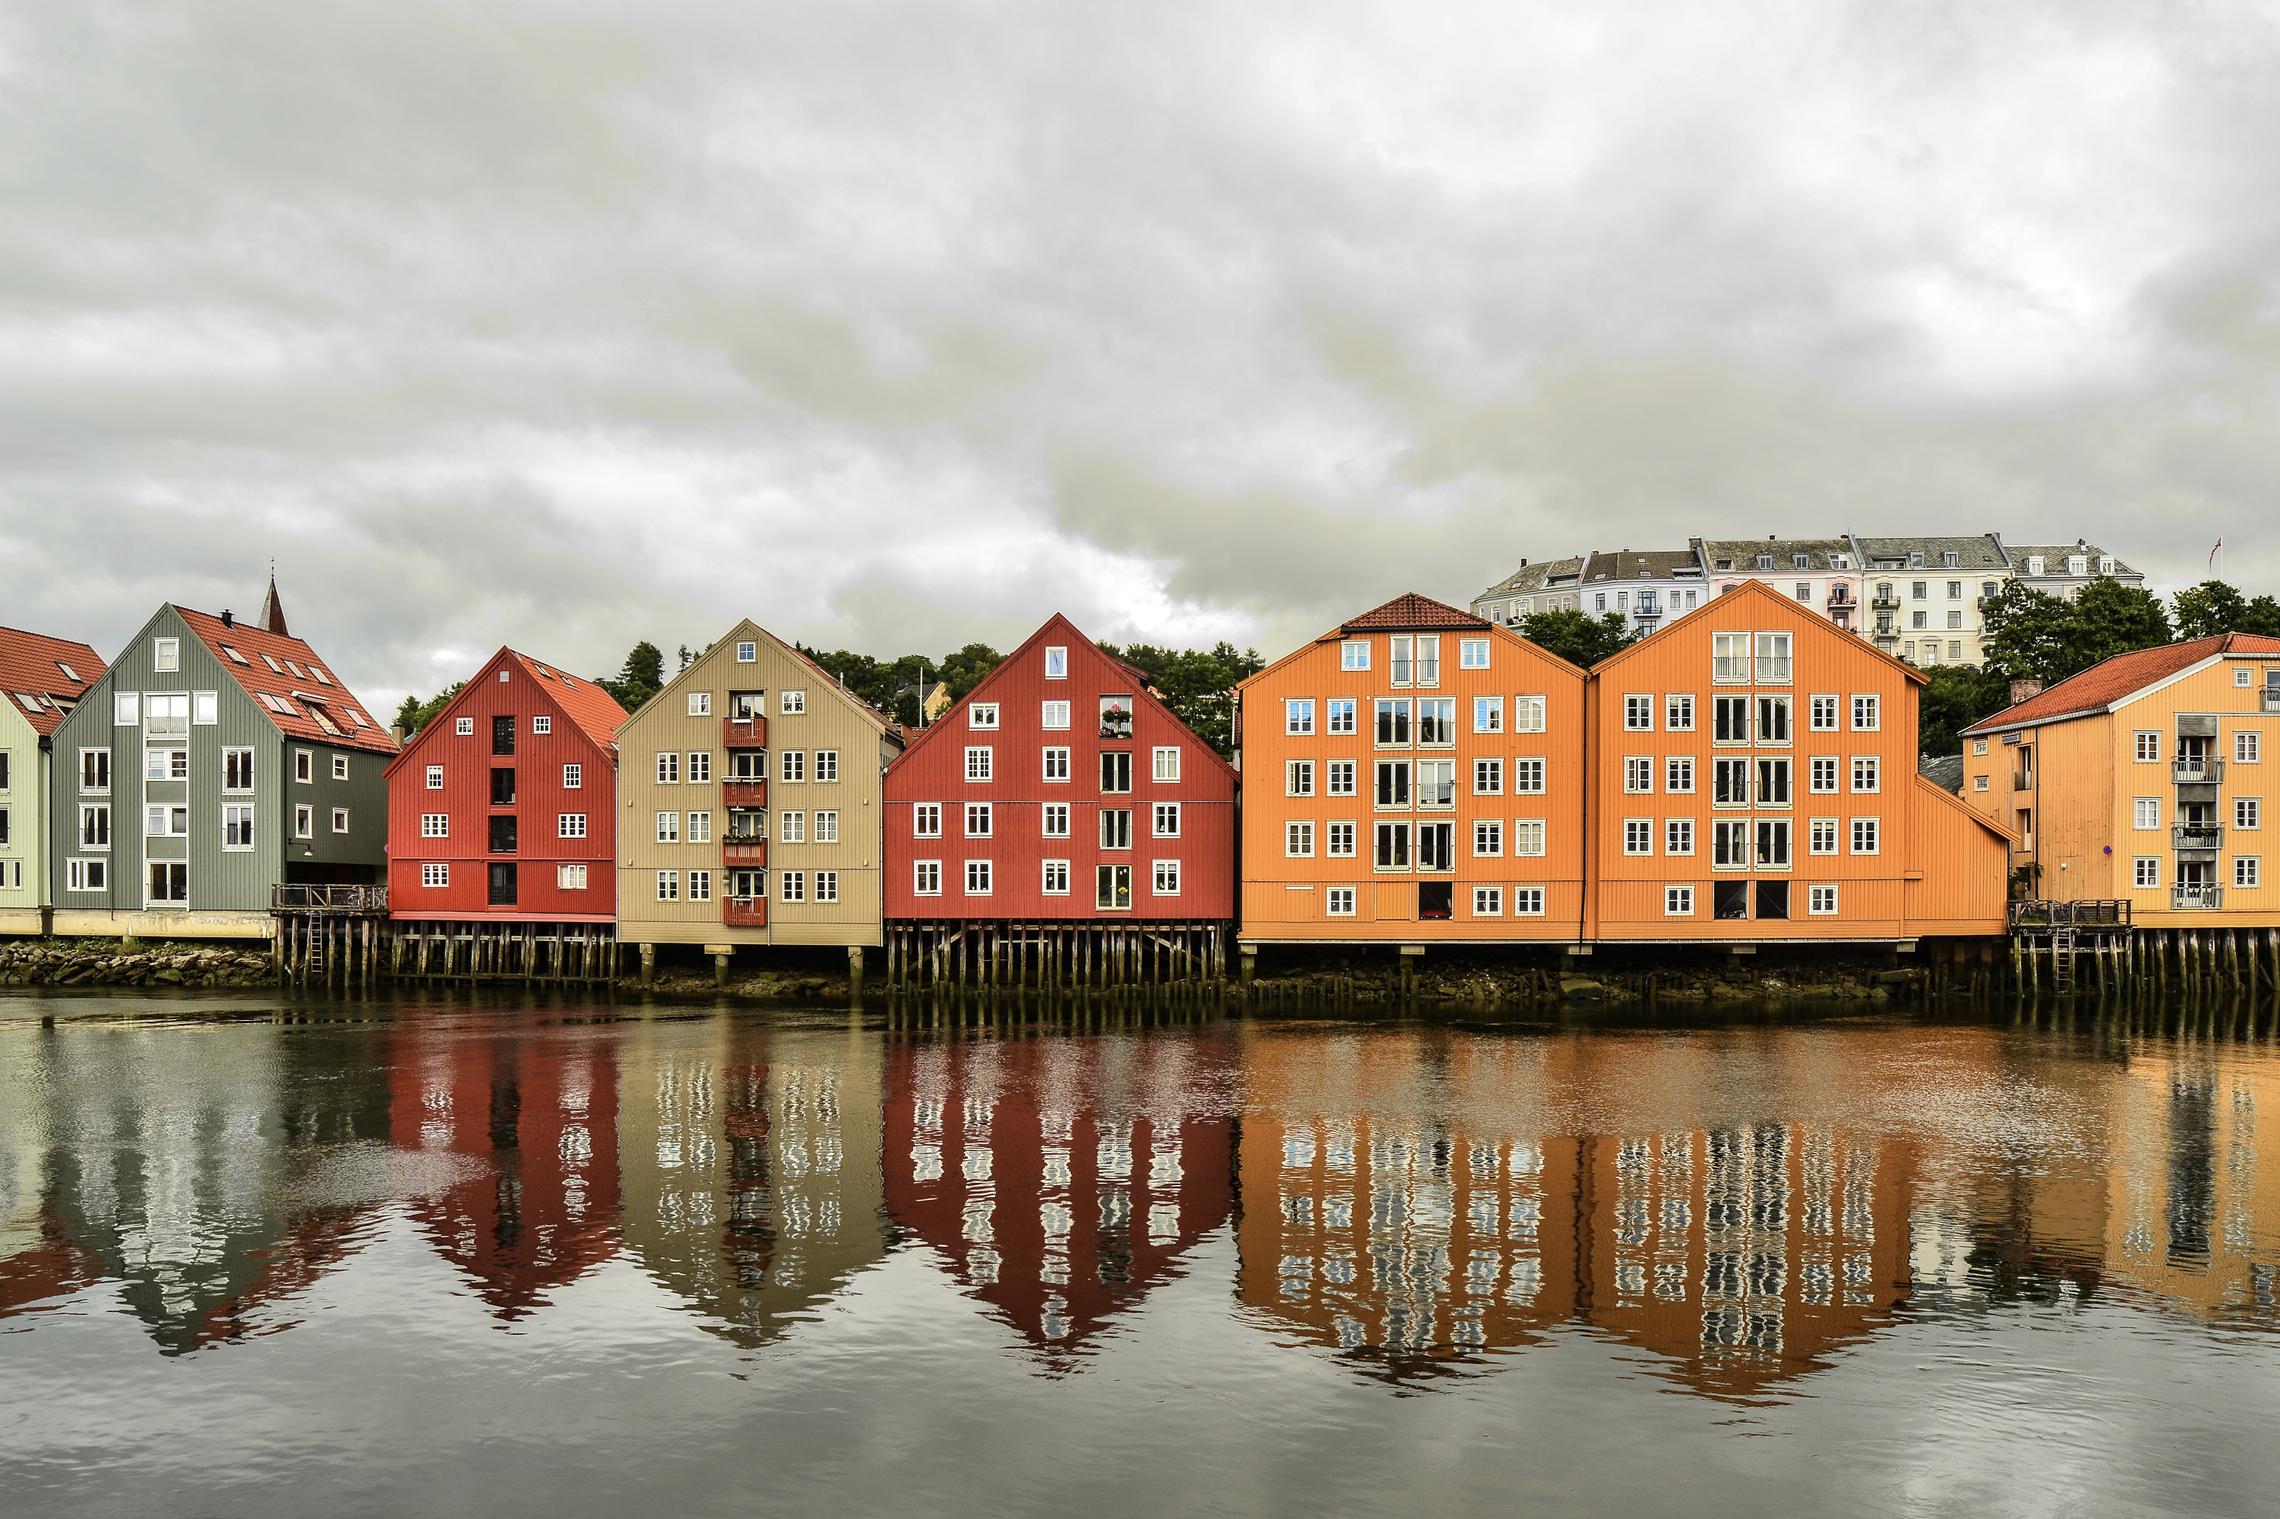 Тронхейм, первая столица Норвегии